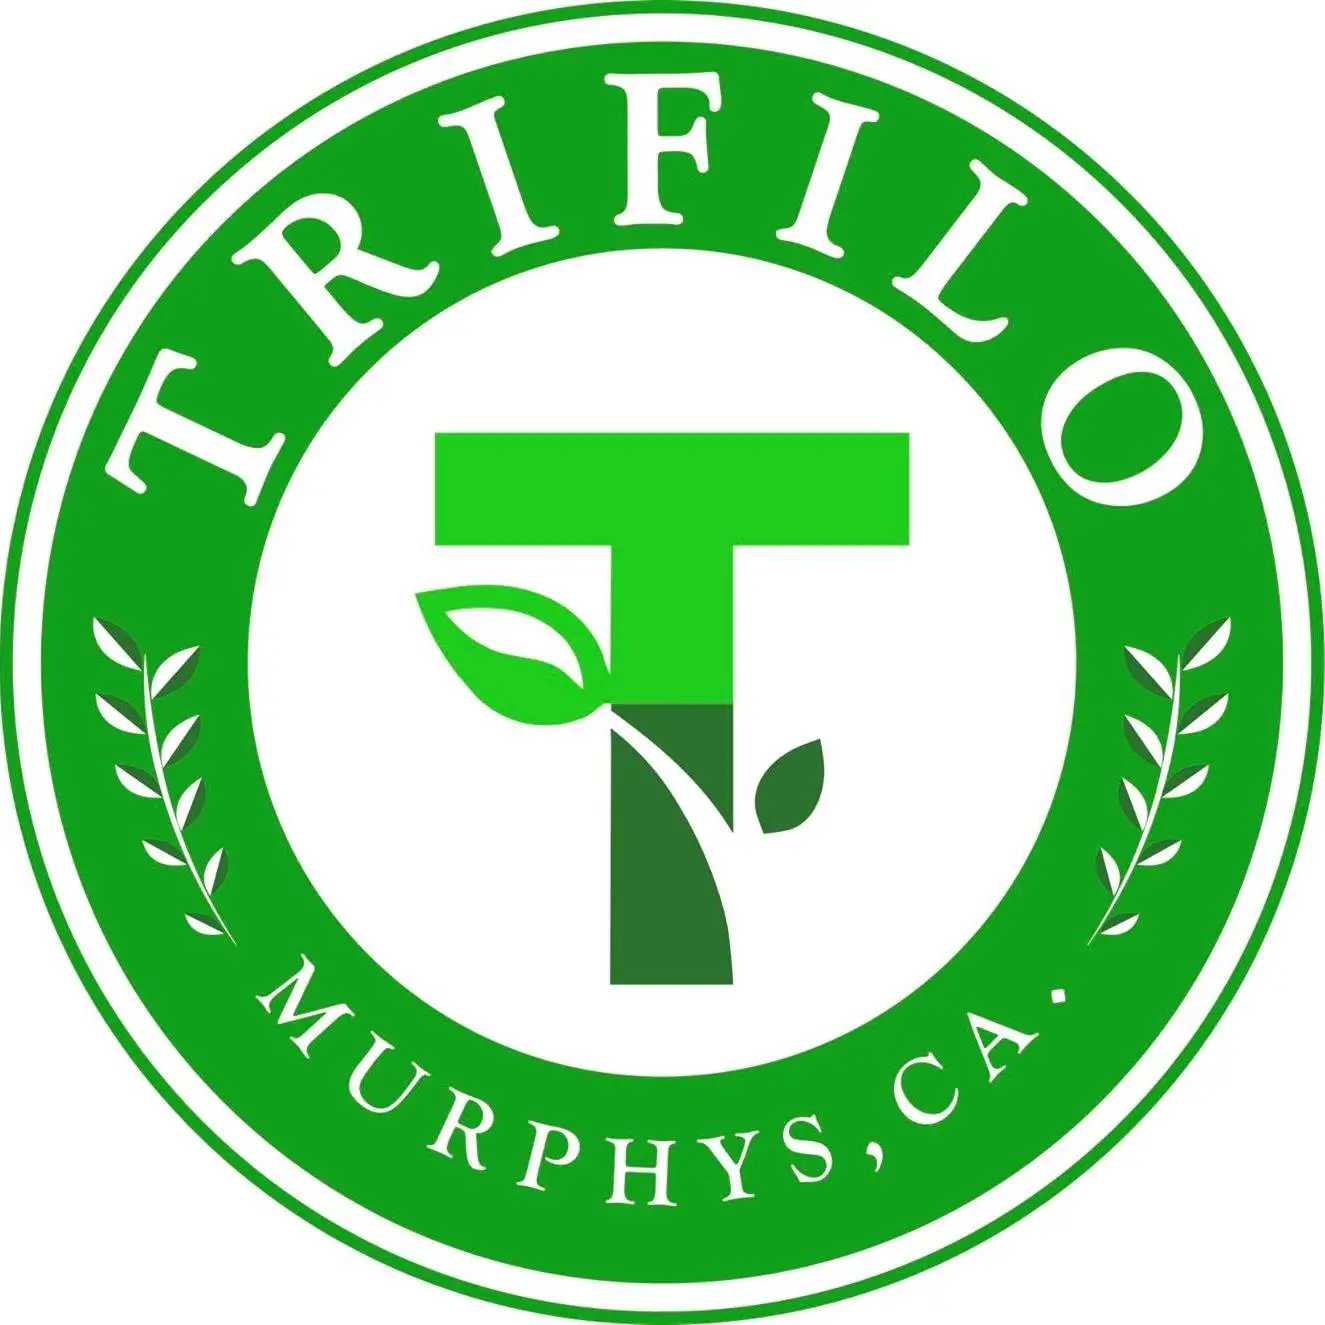 Company logo of Trifilo Garden Center